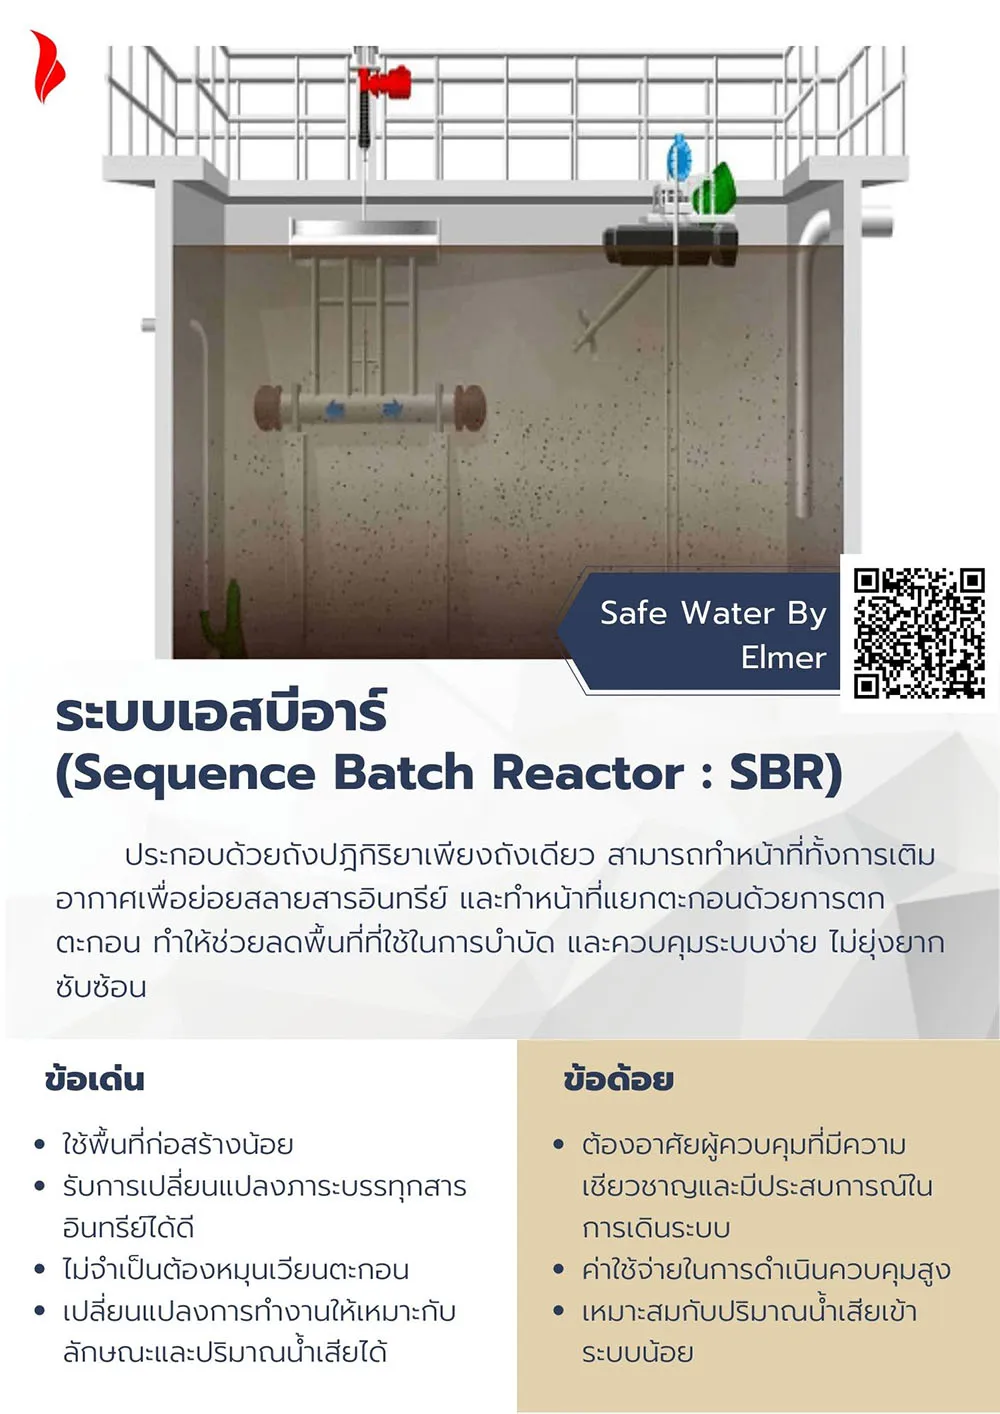 ระบบเอสบีอาร์ (Sequence Batch Reactor : SBR)